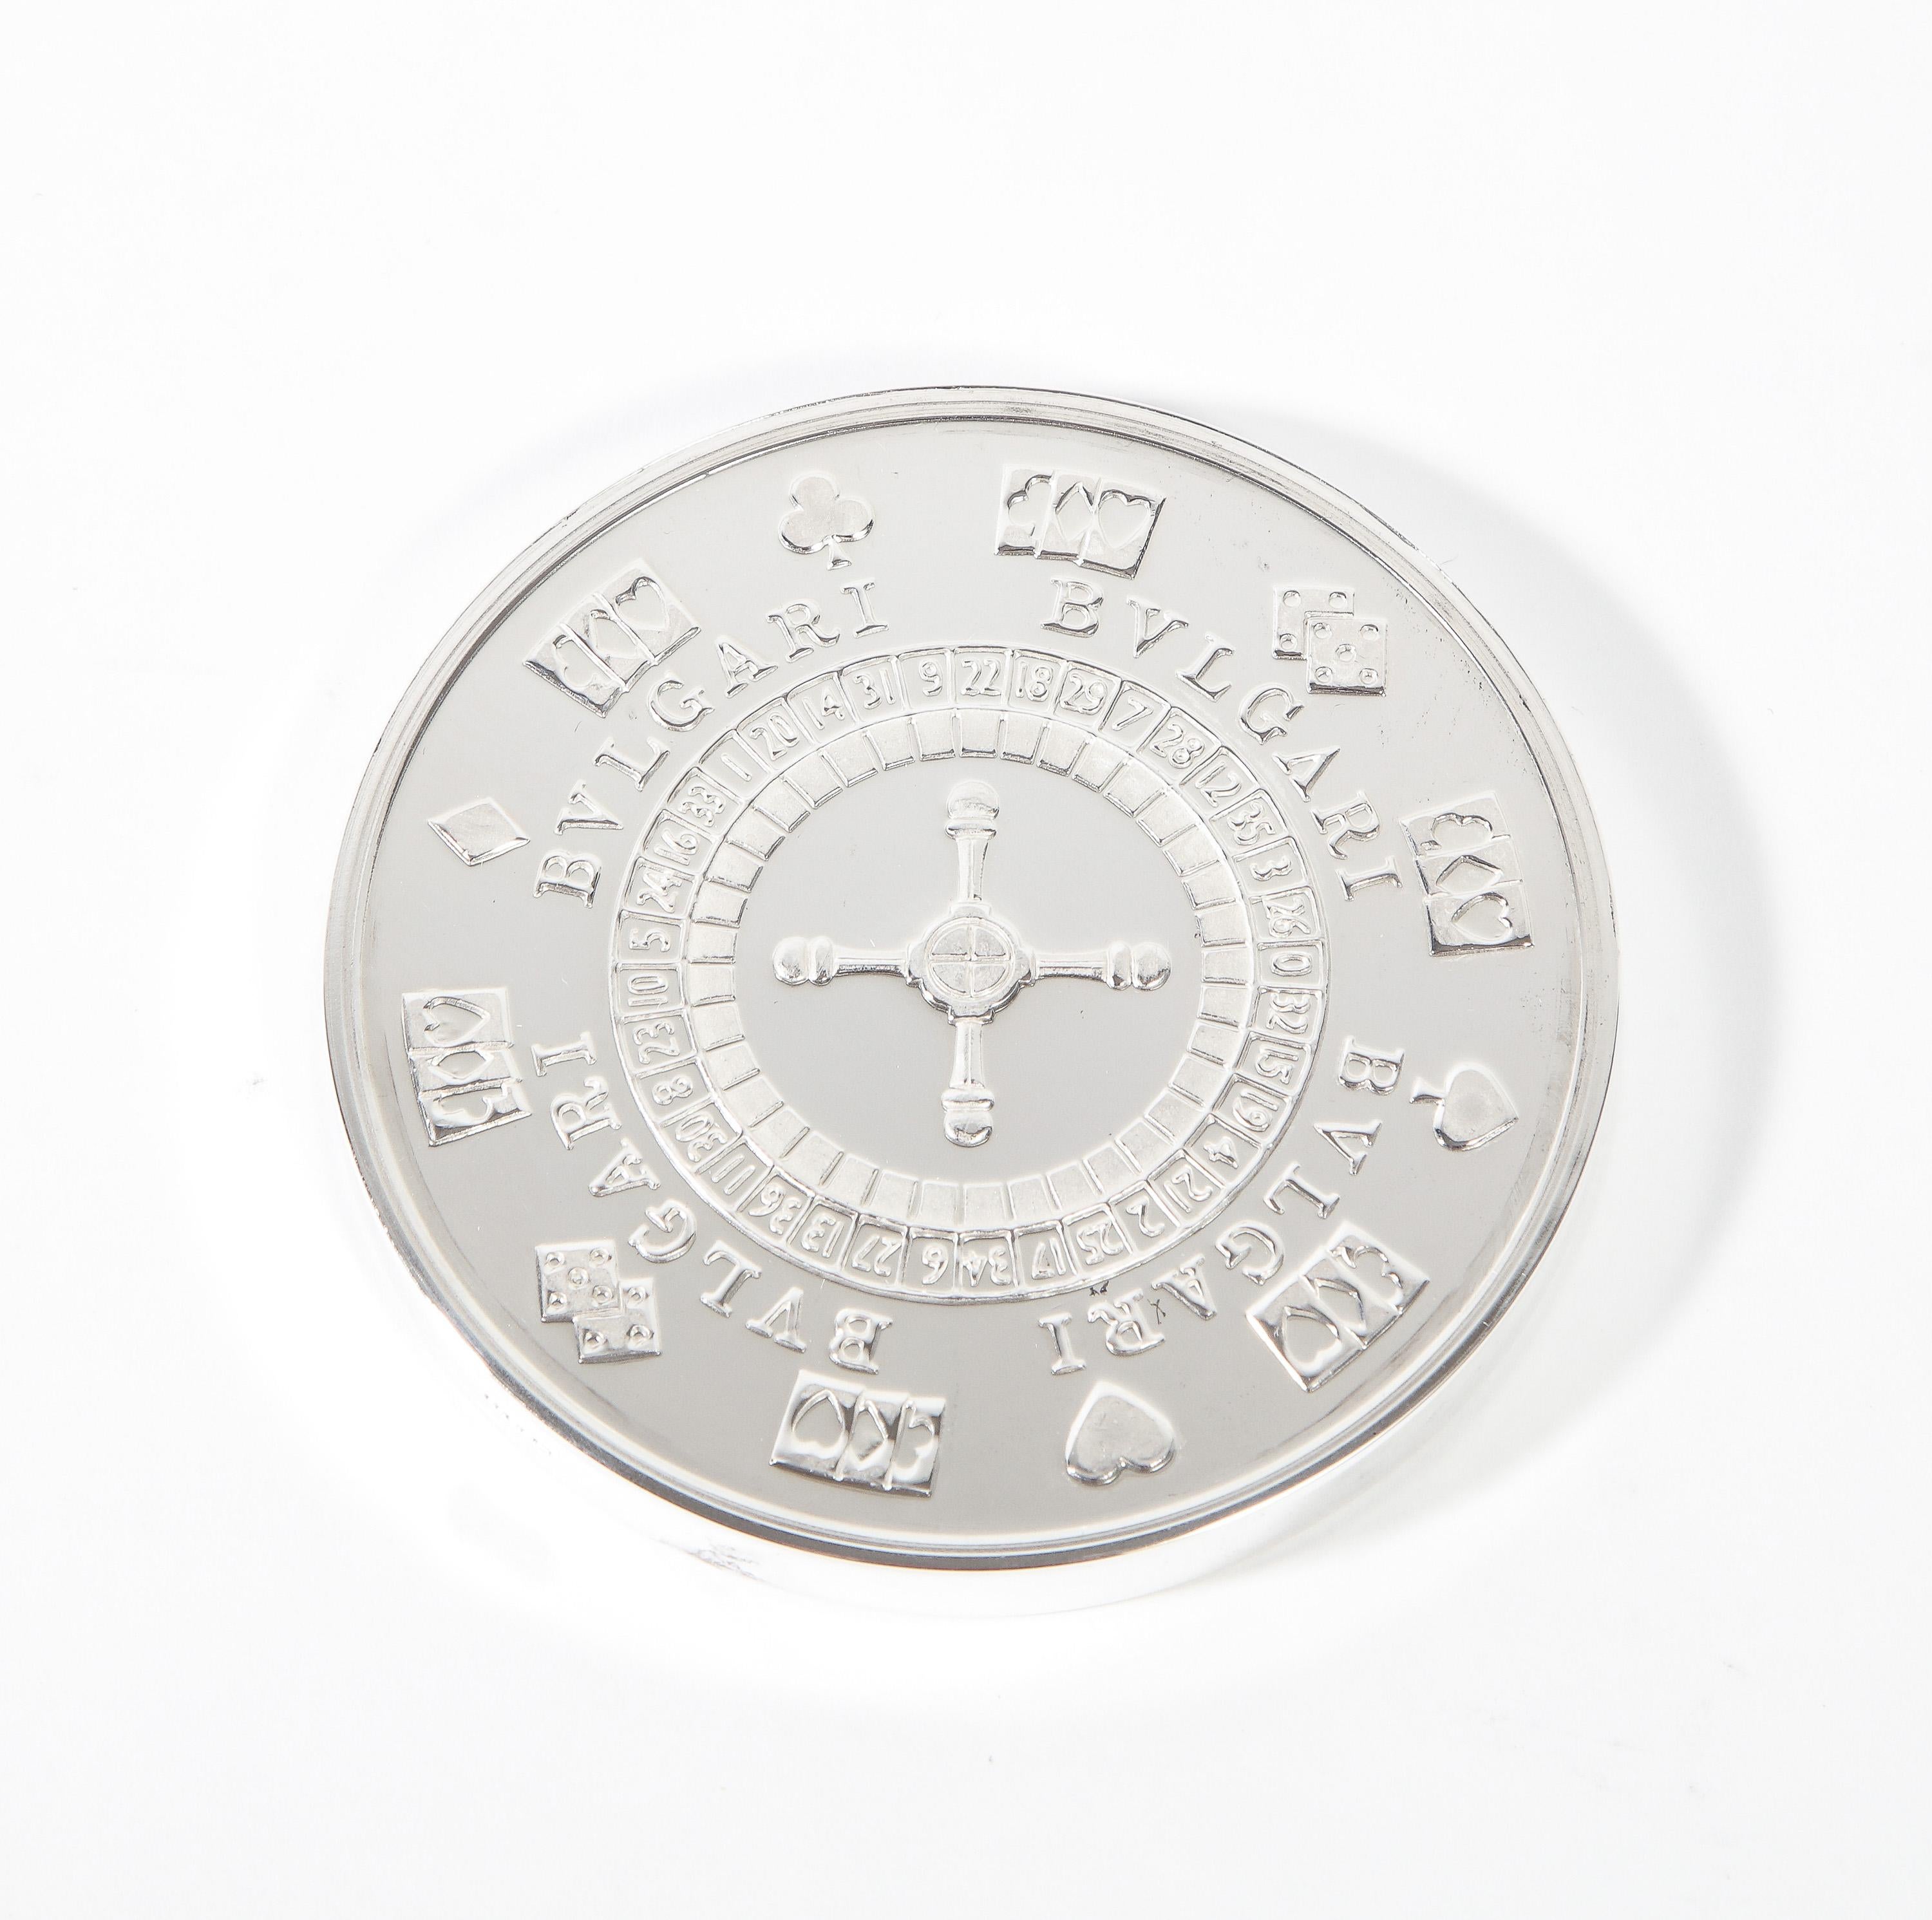 Bvlgari Bulgari sterling silver-gilt oversized casino paperweight coin 